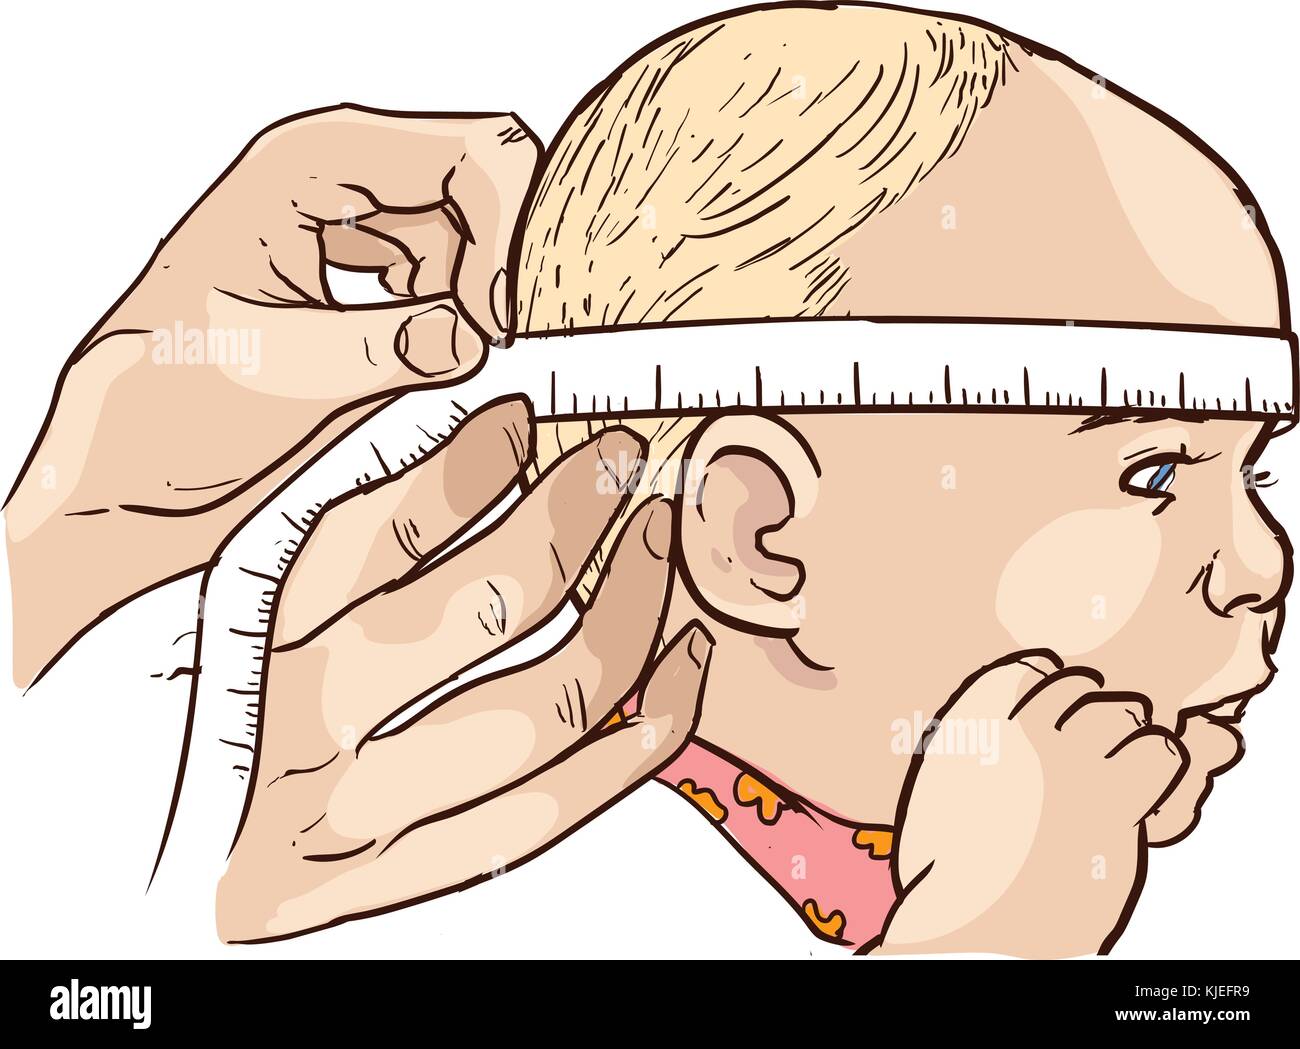 Алгоритм измерения окружности головы. Измерение окружности головы новорожденного. Измерение окружности головы алгоритм. Измерение окружности головы у детей алгоритм. Измерение окружности головы у детей до 1 года.